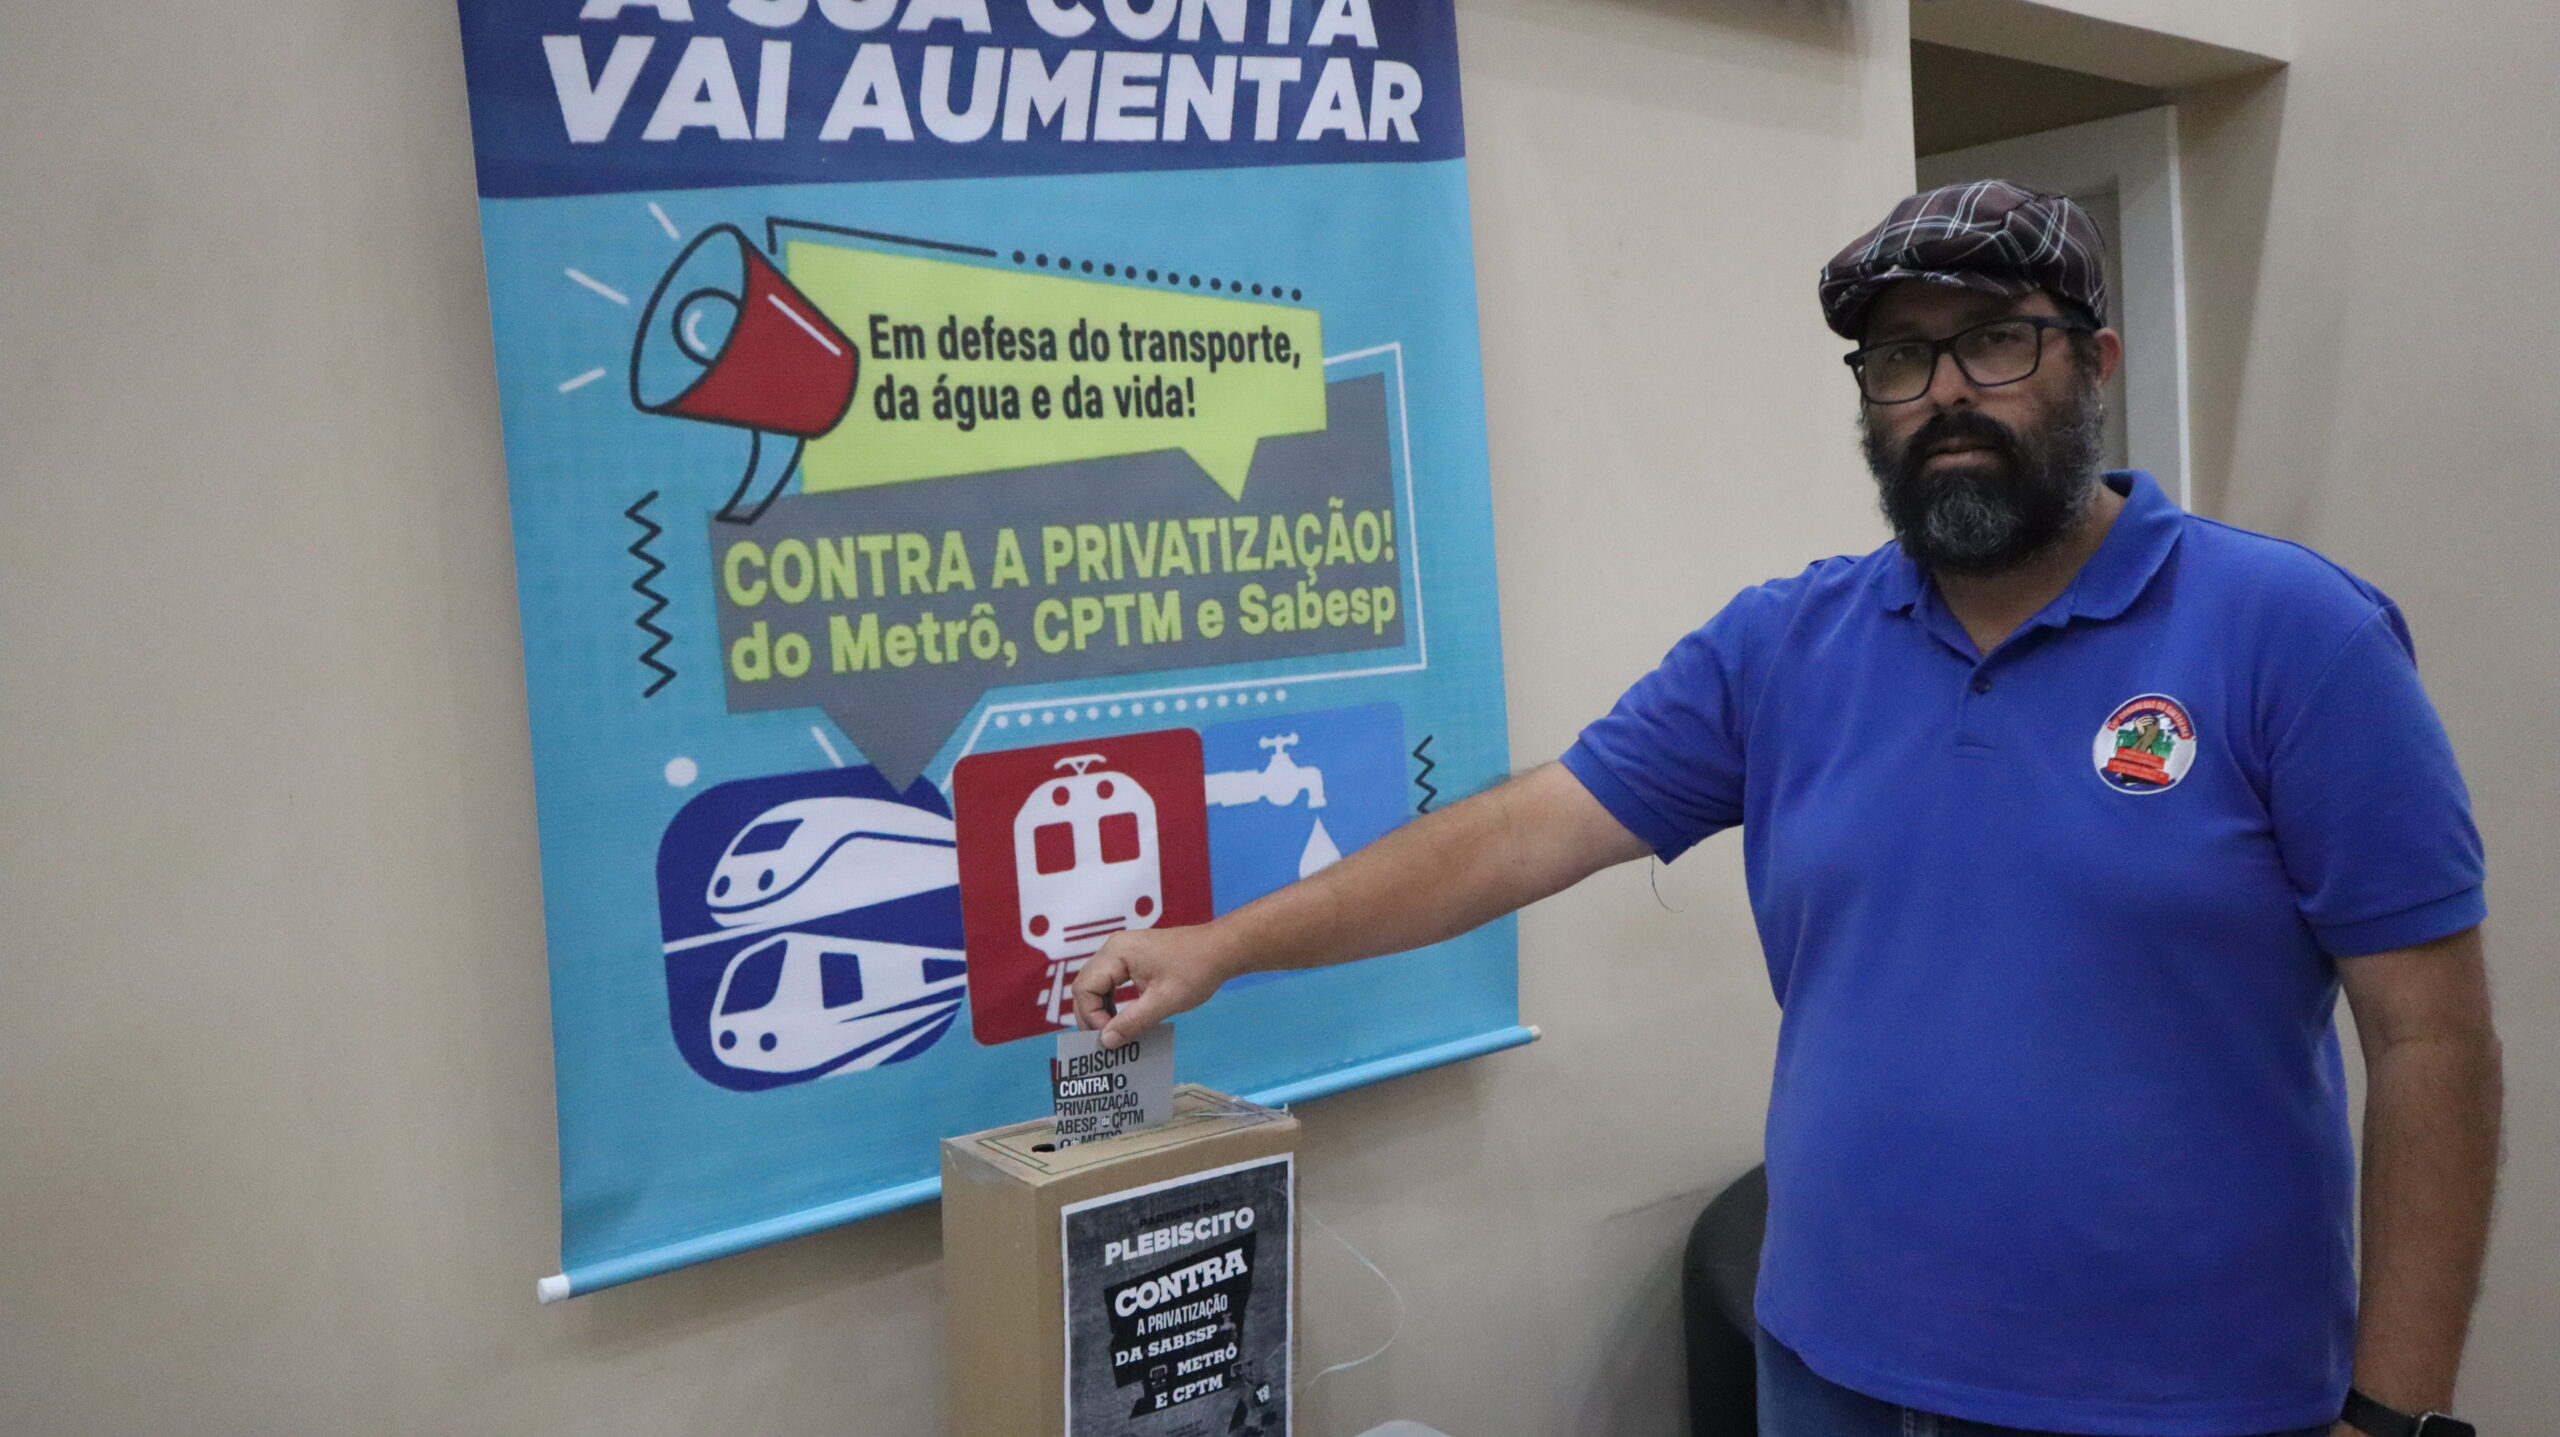 Privatização da Sabesp prejudicará toda a população de SP, diz Faggian -  SEEB Santos e Região